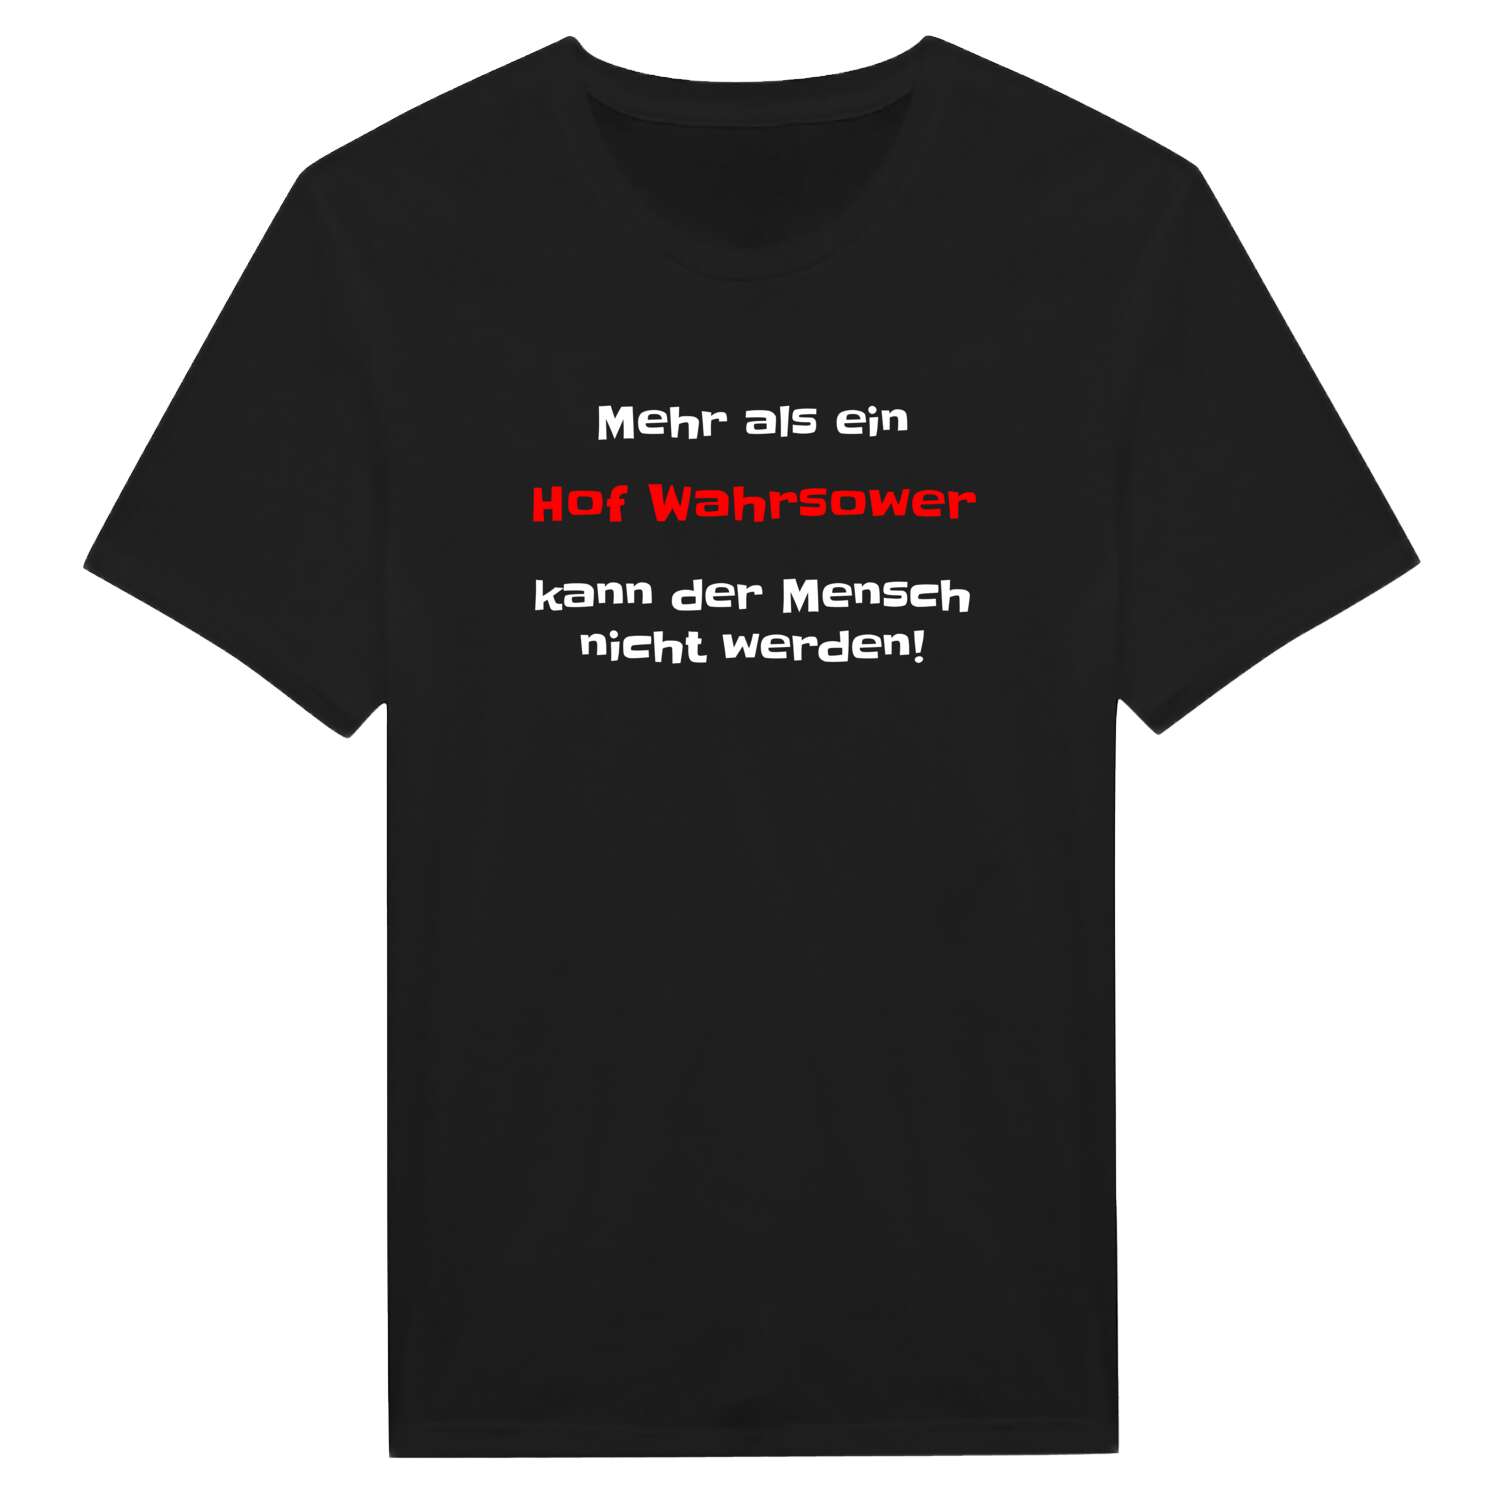 Hof Wahrsow T-Shirt »Mehr als ein«